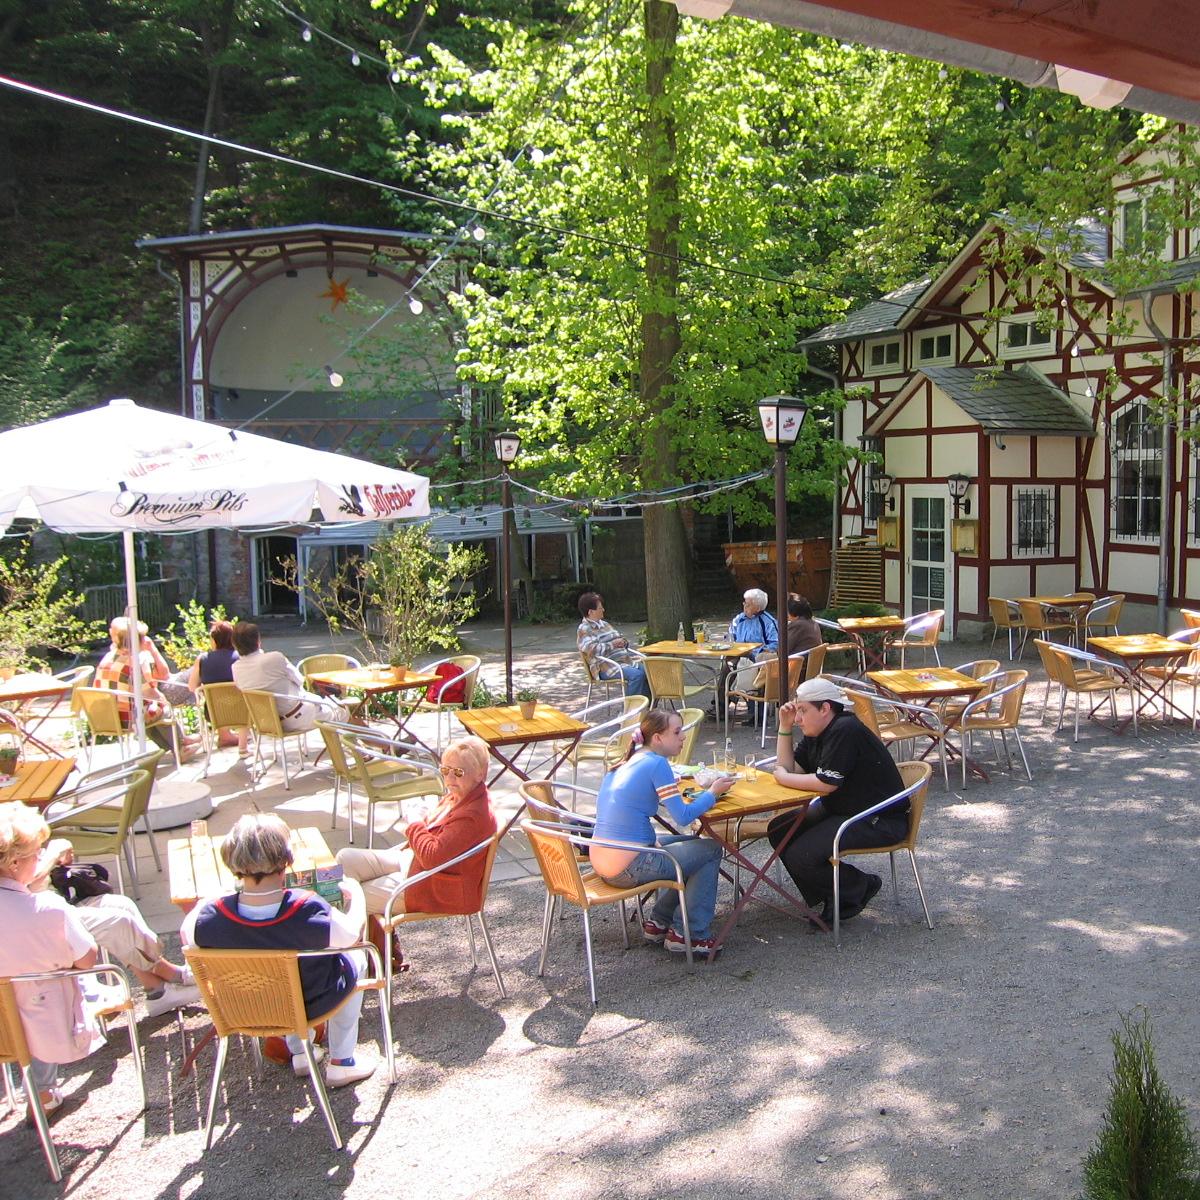 Restaurant "Restaurant Felsenkeller" in Quedlinburg